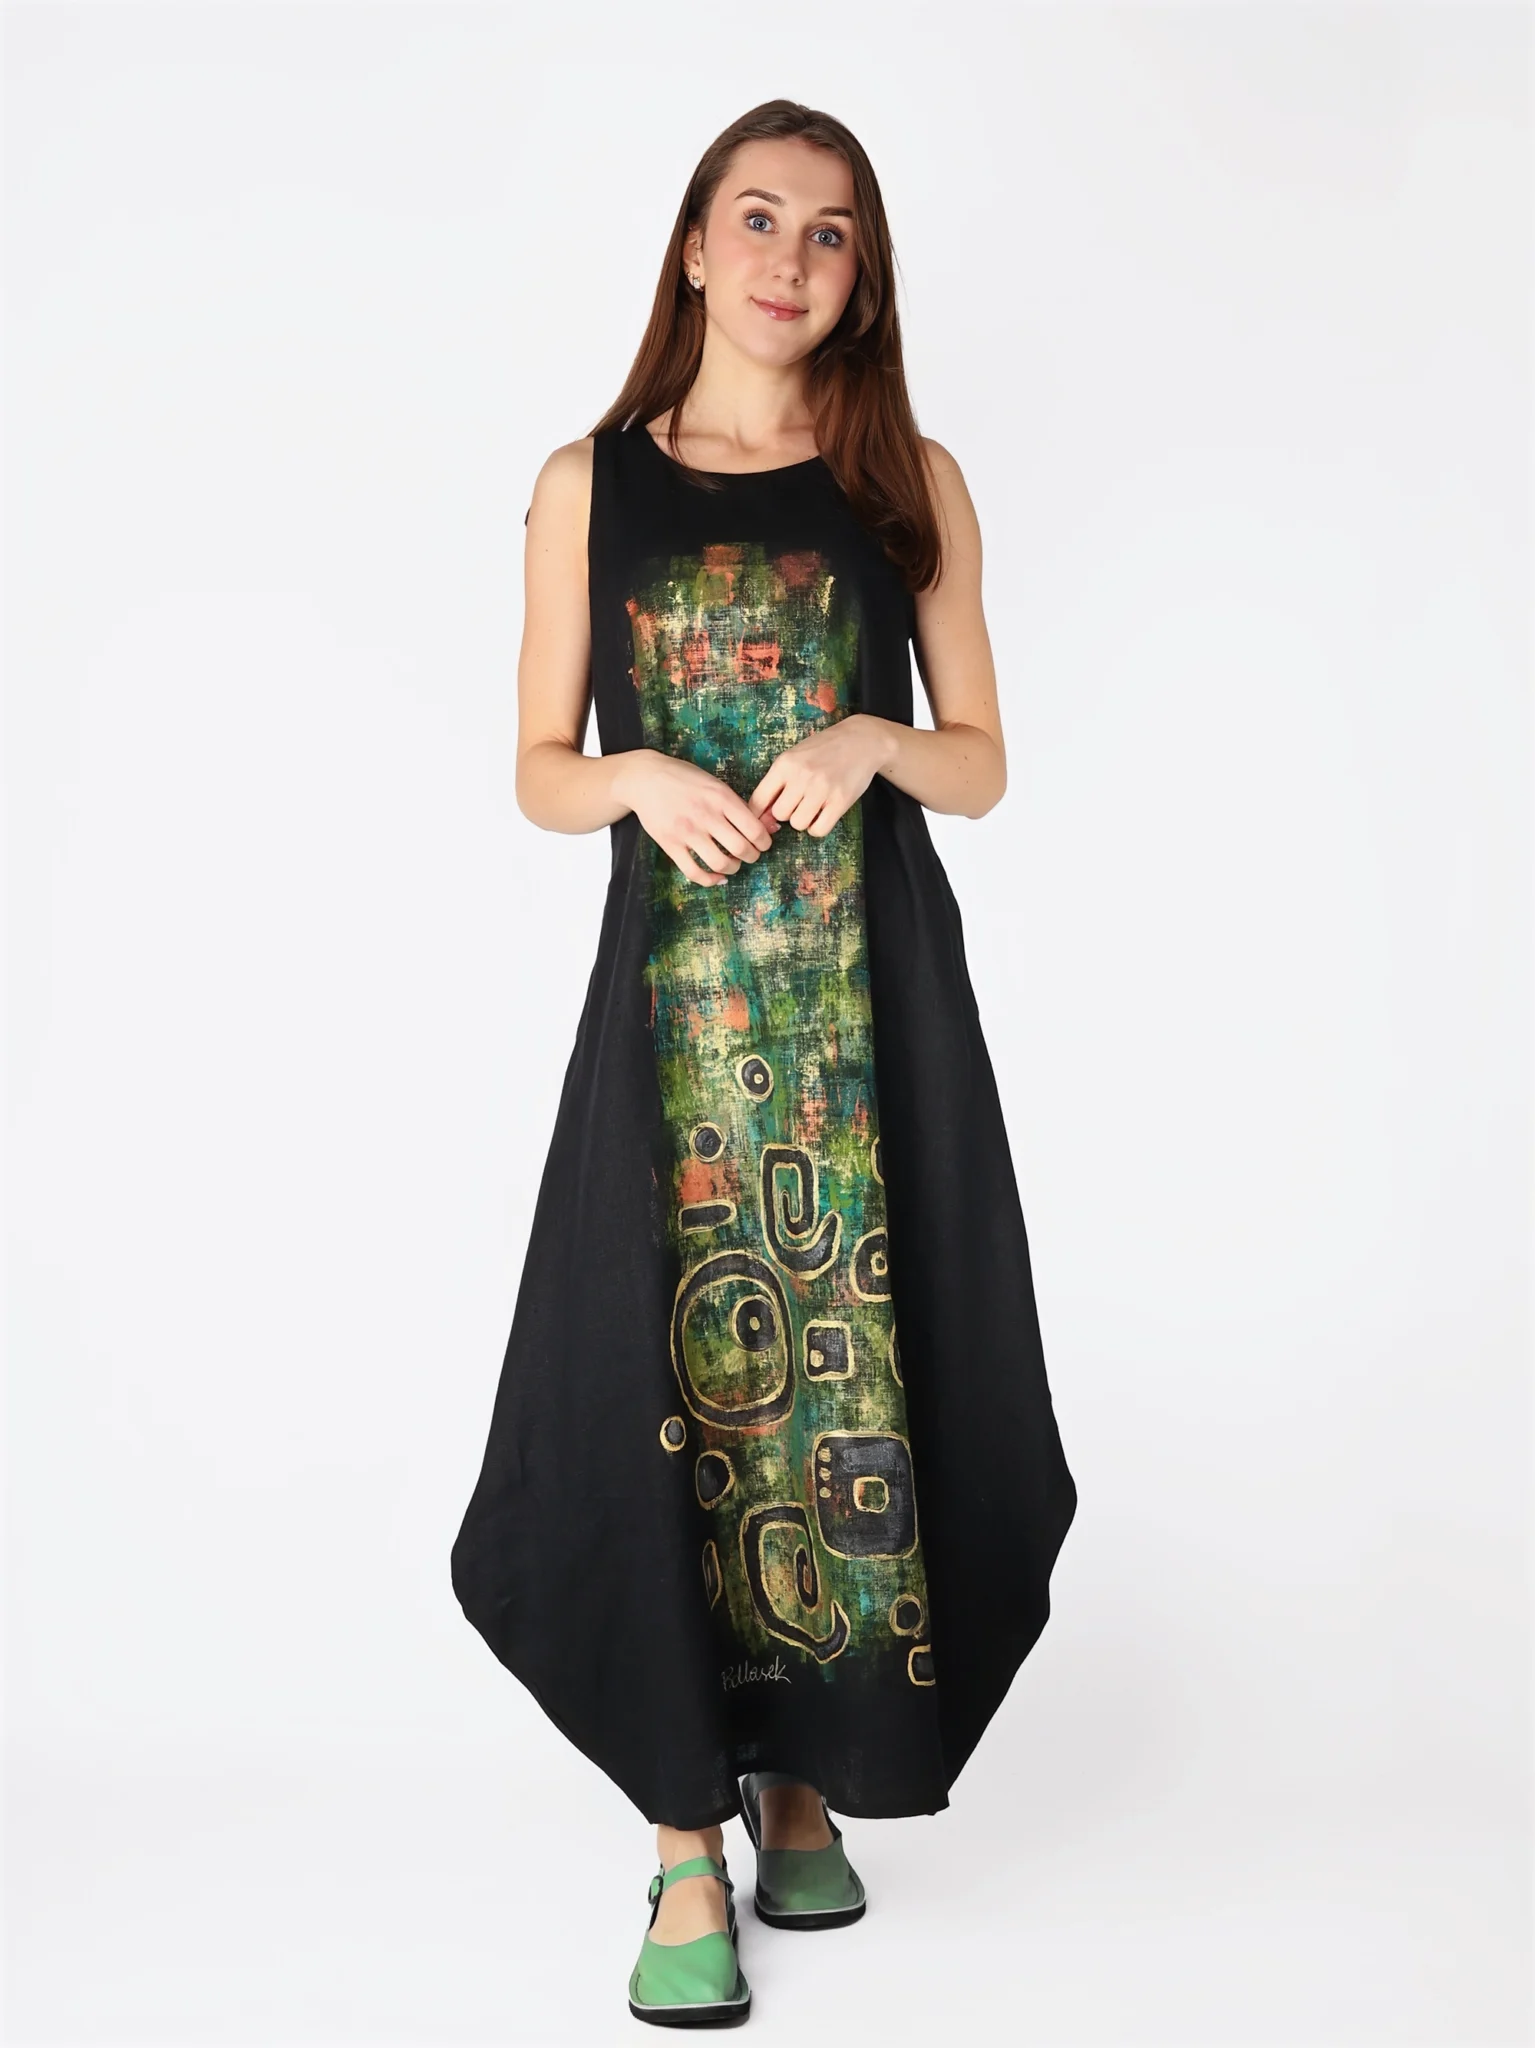 Malowana ręcznie lniana sukienka bombka maxi w kolorze czarnym, na ramiączkach.